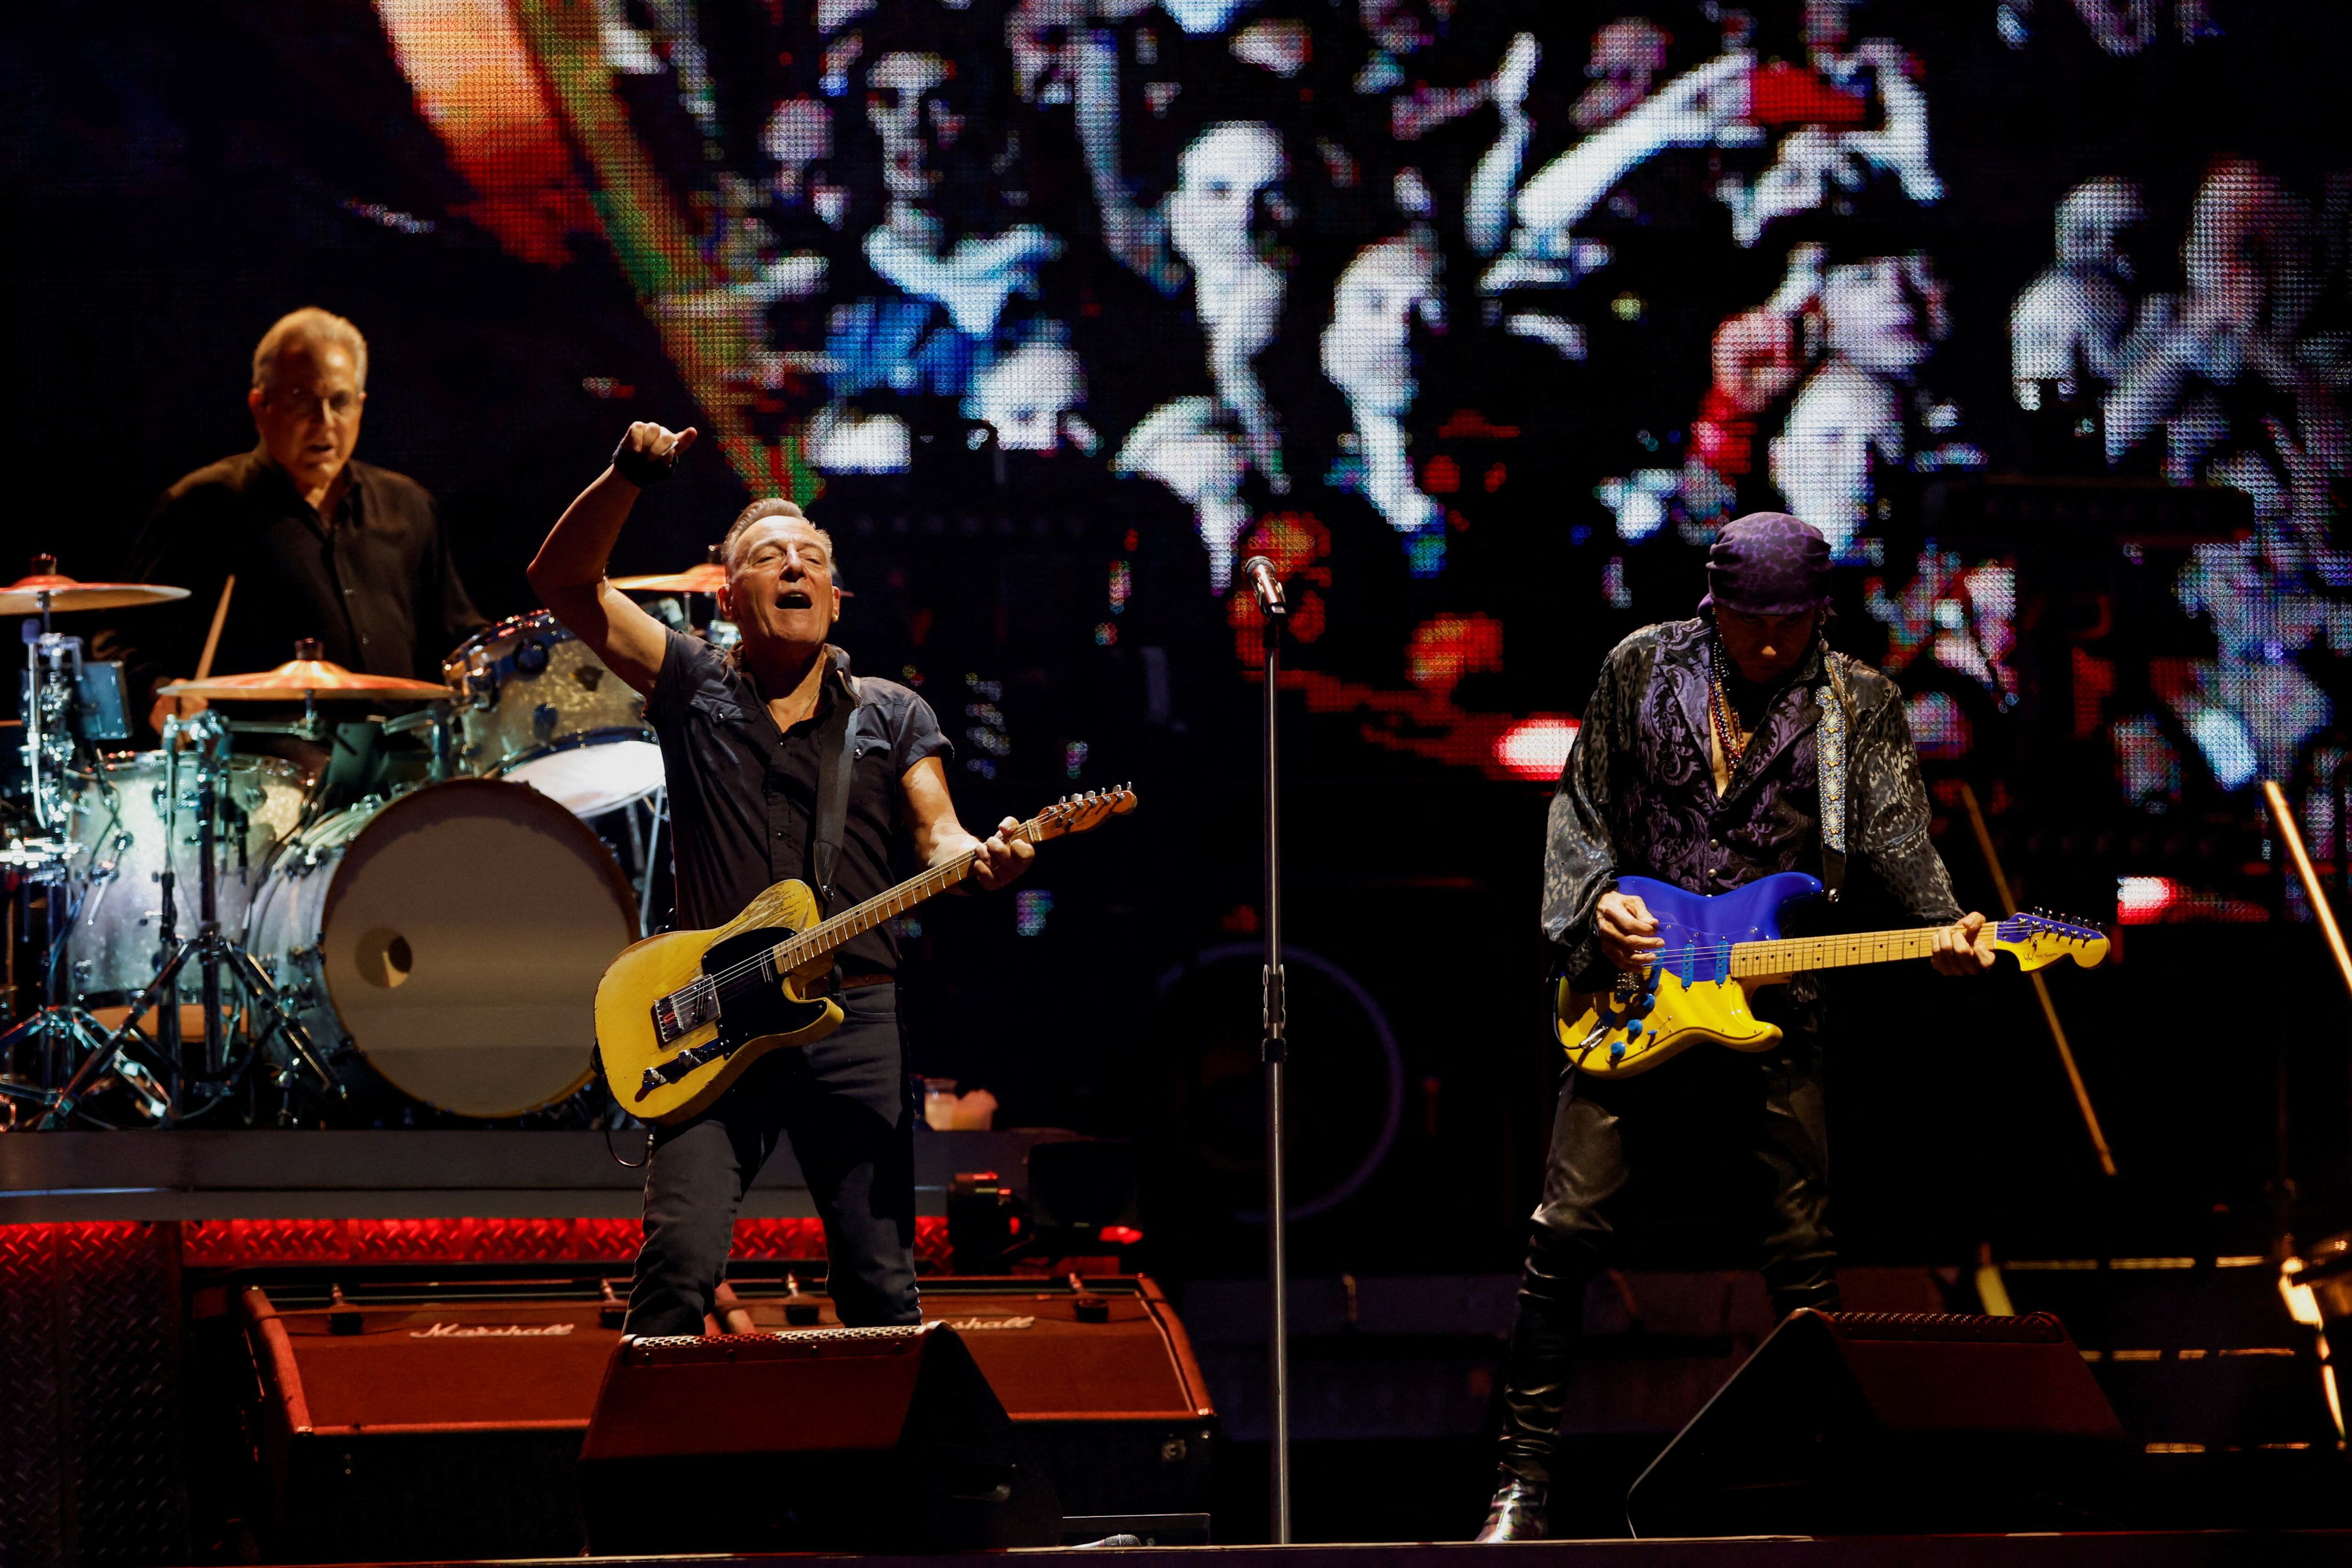 La estrella de rock estadounidense Bruce Springsteen y The E Street band actúan durante un concierto de su gira europea en el Estadi Olímpic Lluis Companys de Barcelona. REUTERS/Albert Gea/File Photo